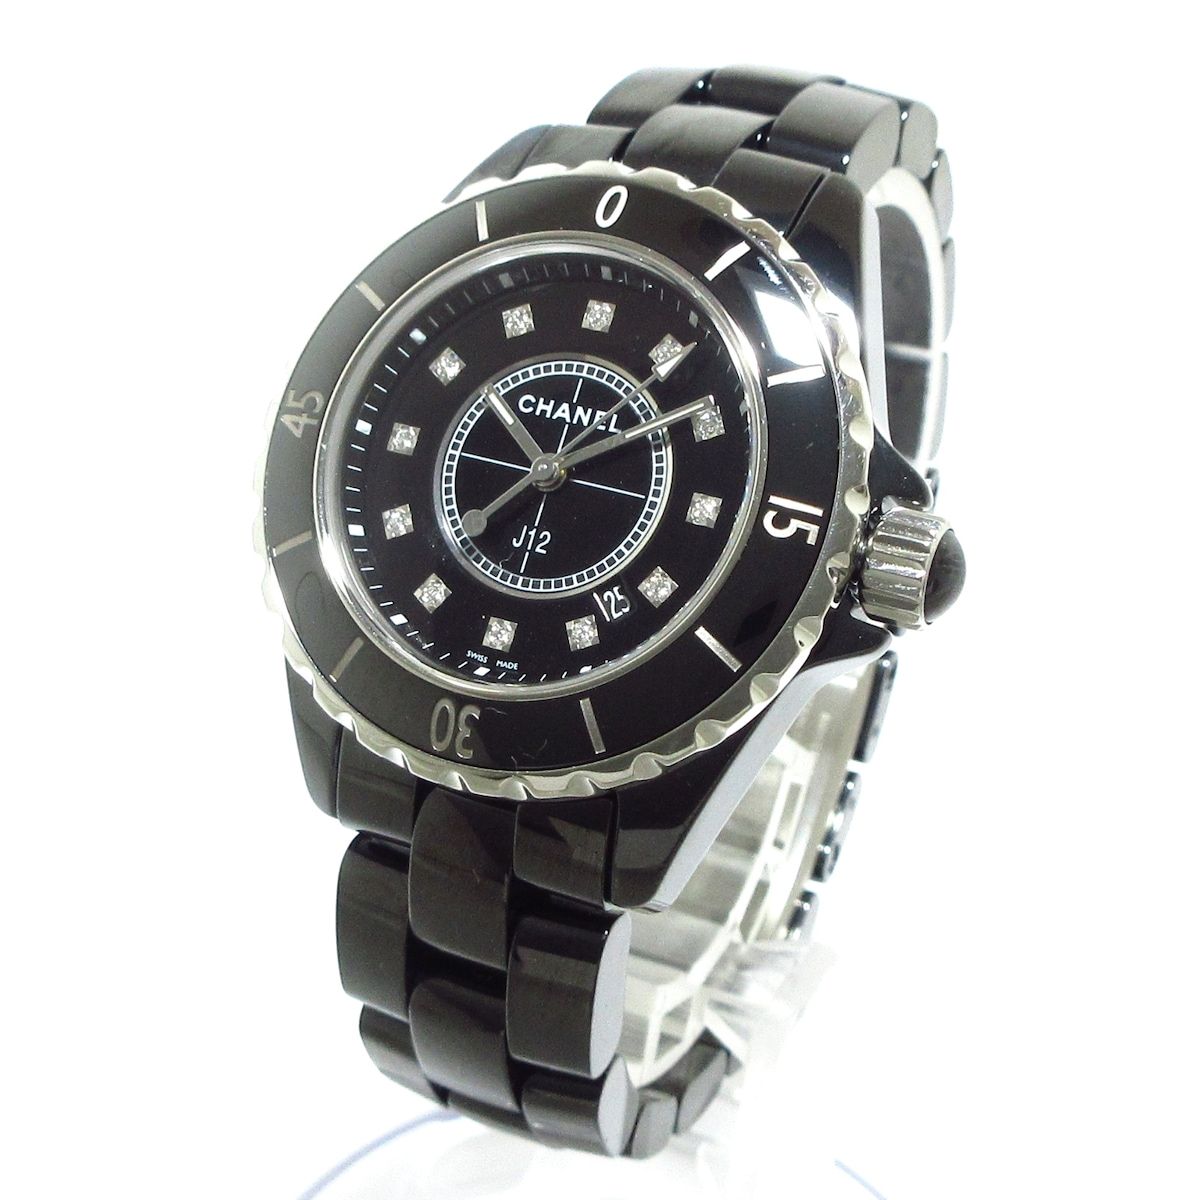 CHANEL(シャネル) 腕時計美品 J12 H1625 レディース 新型/セラミック/12Pダイヤインデックス/33mm 黒